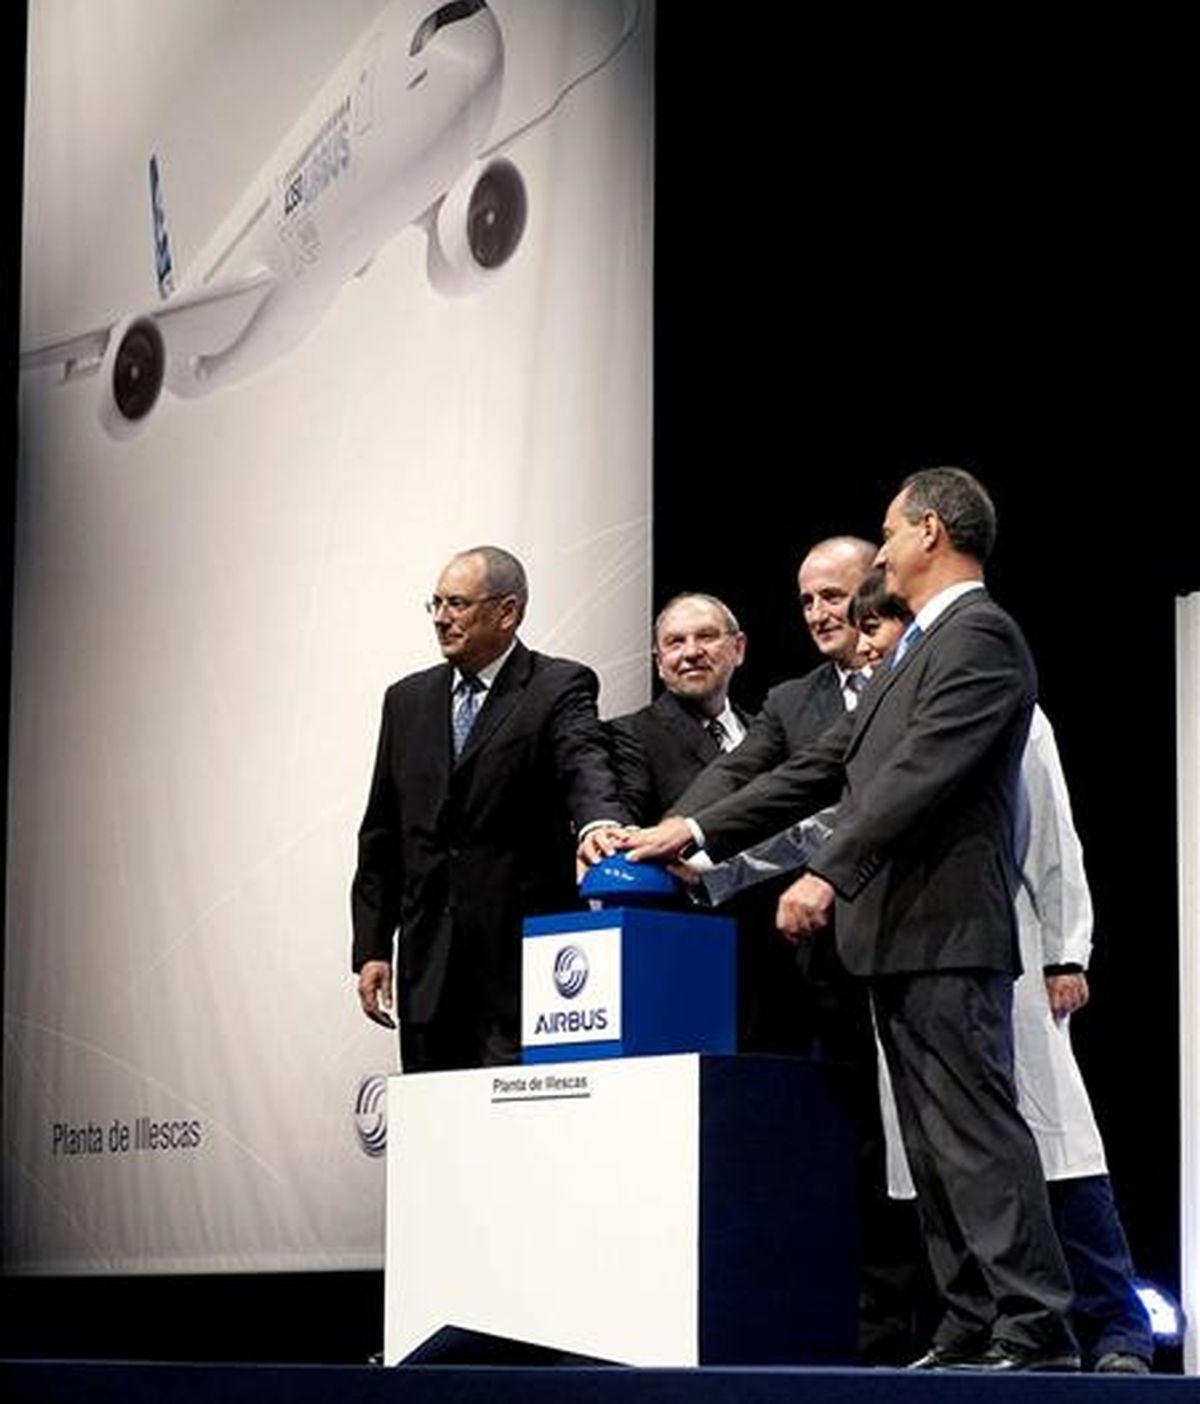 El ministro de Industria, Miguel Sebastián (3i), y el vicepresidente ejecutivo de Operaciones de Airbus, Gerard Weber (2i), entre otros, durante el acto protocolario del inicio de la producción del programa Airbus A350 XWB en España, en la factoría que el constructor aeronáutico tiene en la localidad toledana de Illescas. EFE